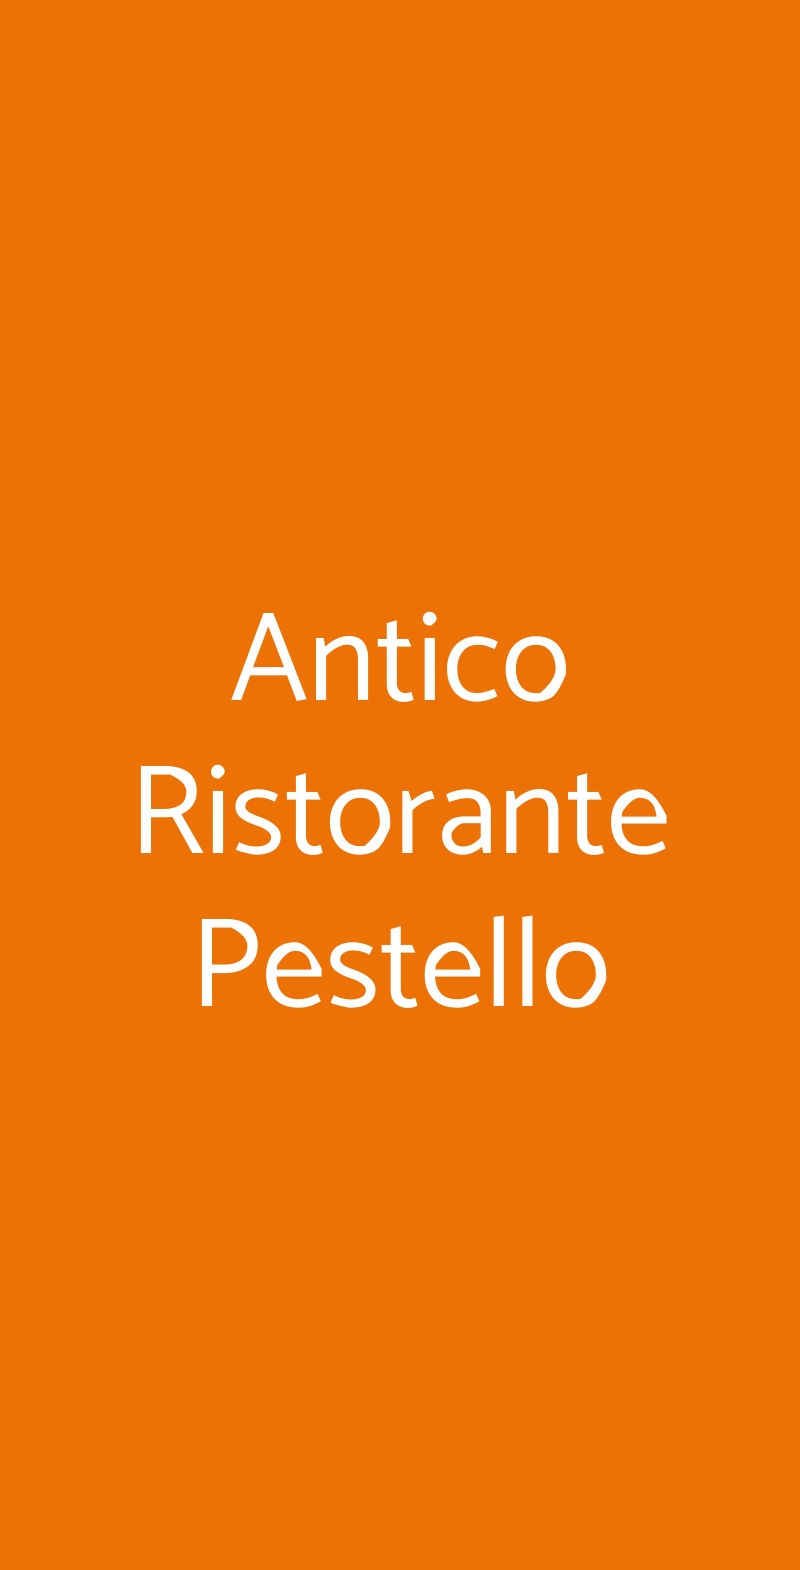 Antico Ristorante Pestello Castellina in Chianti menù 1 pagina